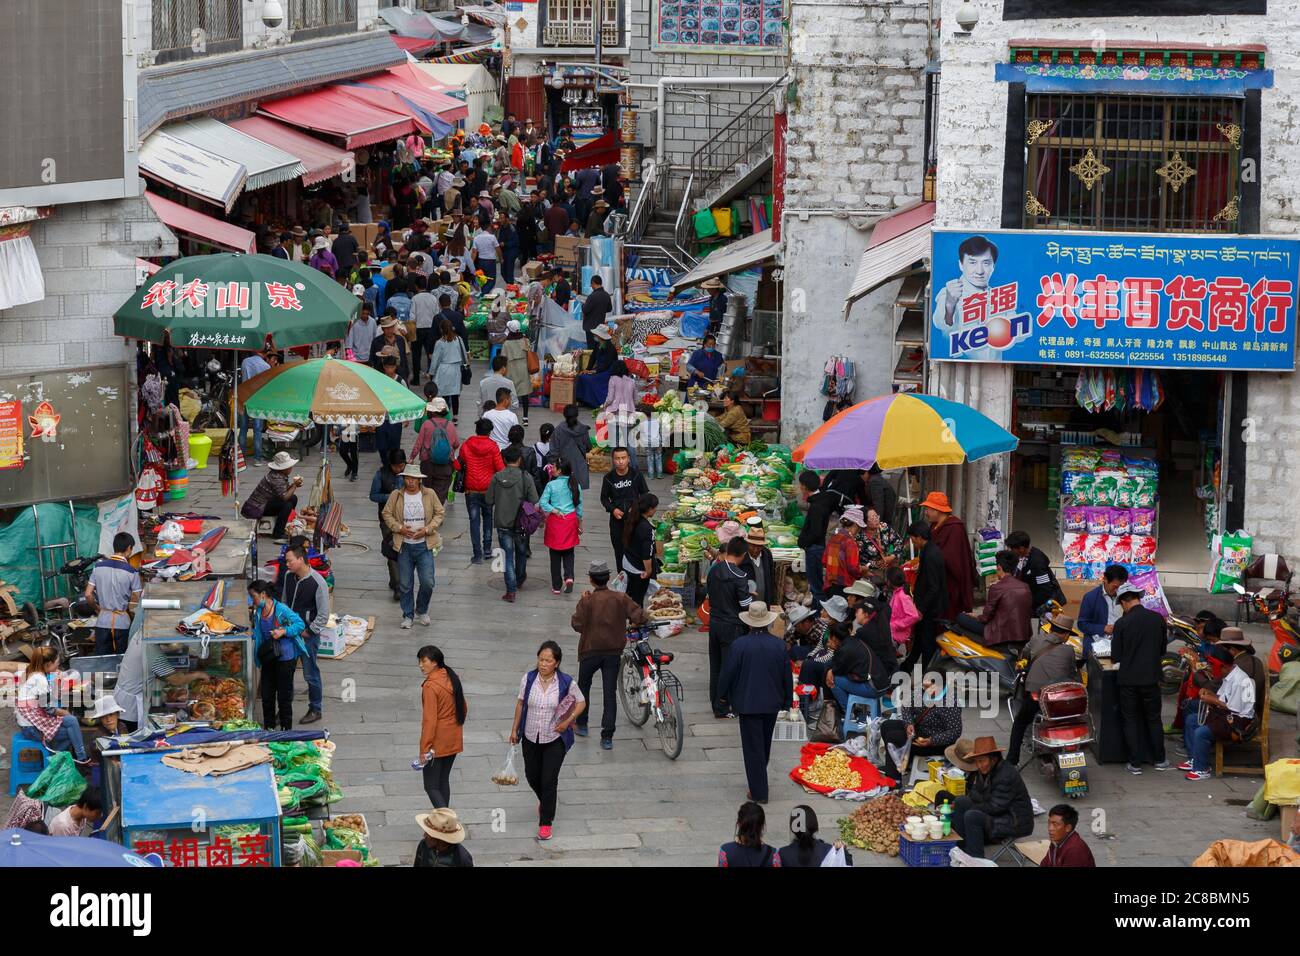 Lhasa, Tibet / China - 29. Jul 2017: Blick auf den überfüllten Straßenmarkt in einer Gasse der tibetischen Hauptstadt Lhasa. Menschen einkaufen, Stände mit Gemüse und f Stockfoto